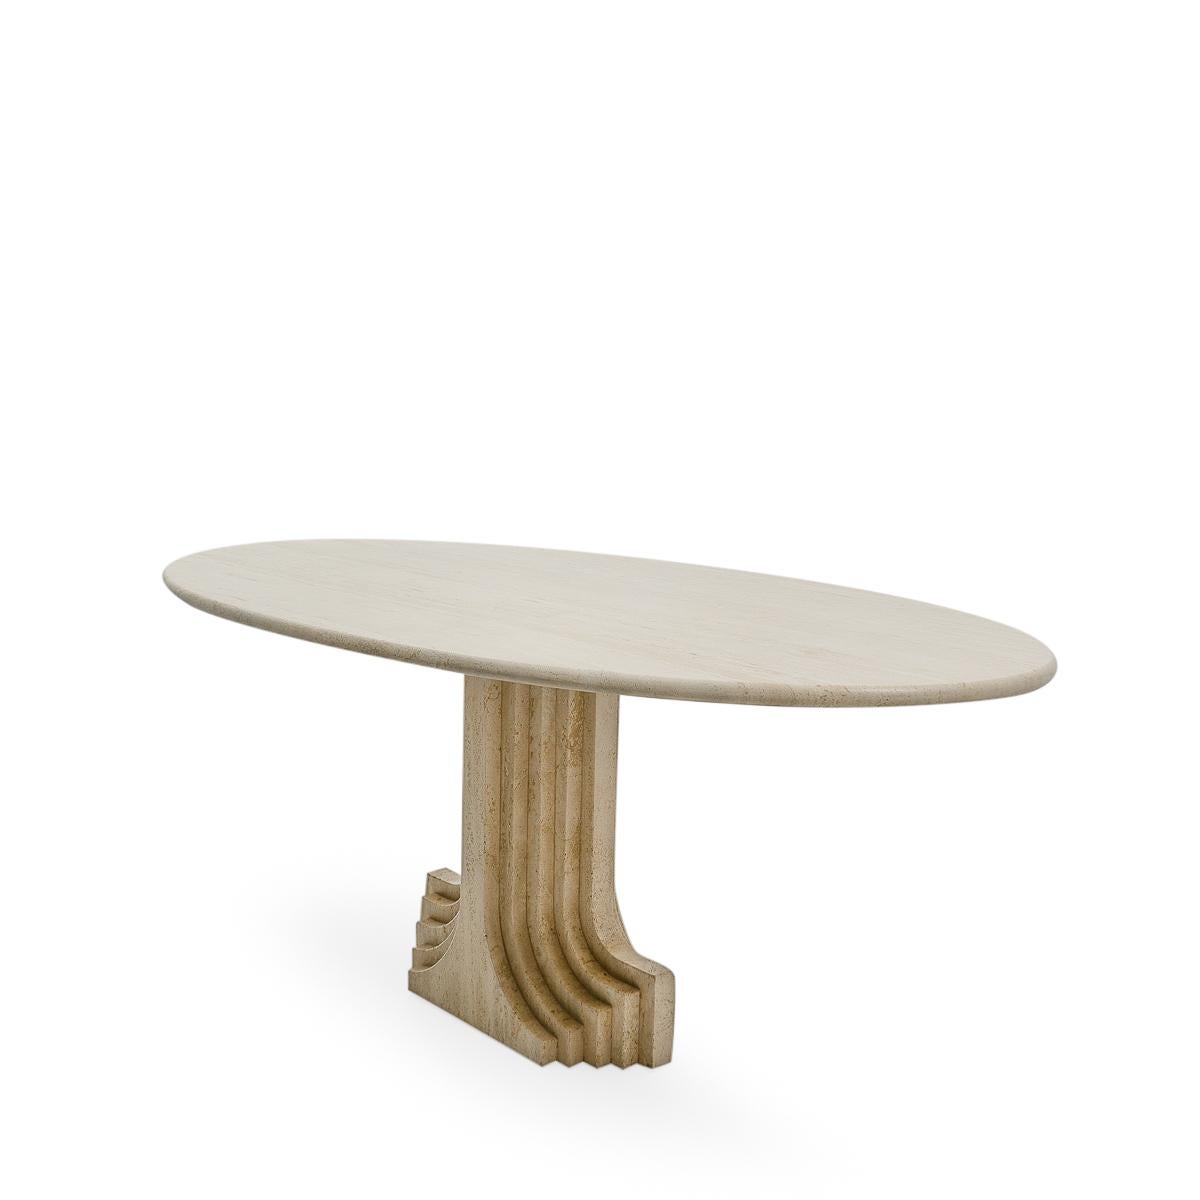 Ovaler Esstisch aus Travertin des italienischen Architekten Carlo Scarpa, entworfen in den 1970er Jahren.

Mit seinem skulpturalen Sockel und der Tischplatte aus poliertem Travertin ist dieses Stück Scarpas moderne Interpretation klassischer